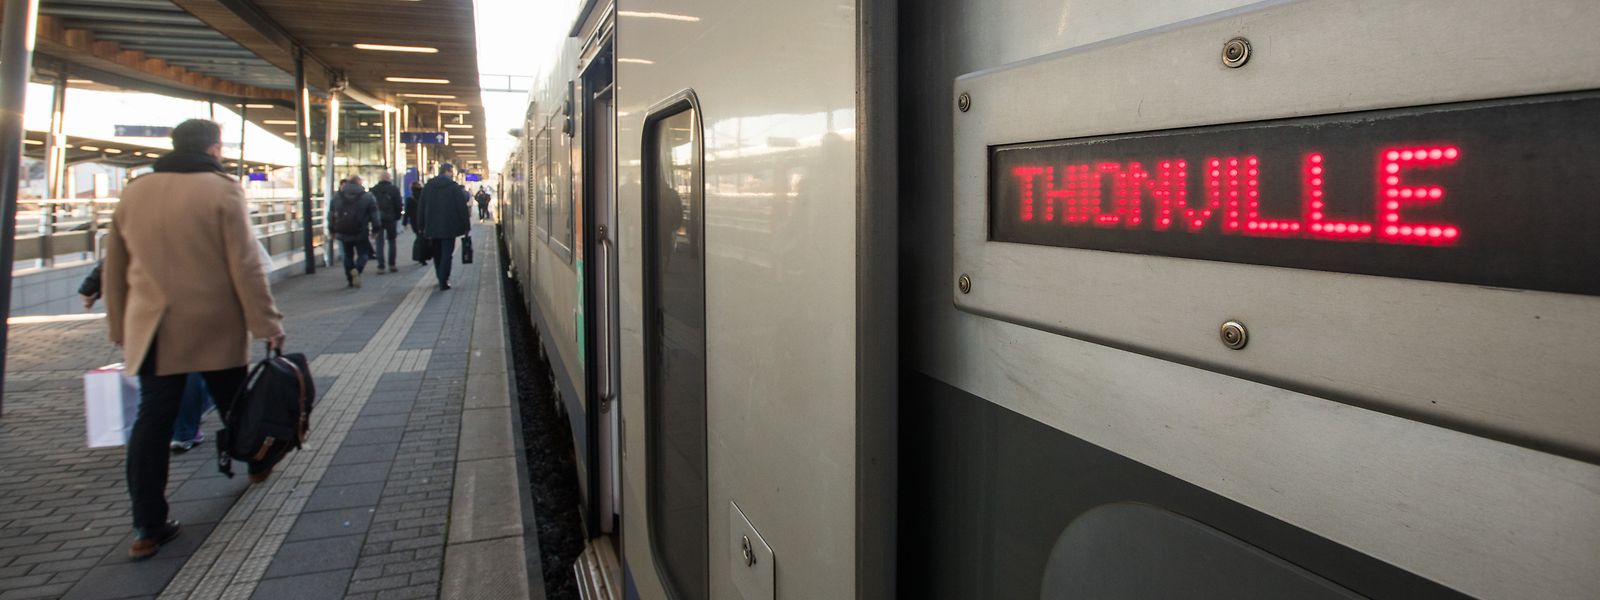 Les passagers n'auront plus à changer de rames en gare de Thionville. Une des bonnes nouvelles du déconfinement.